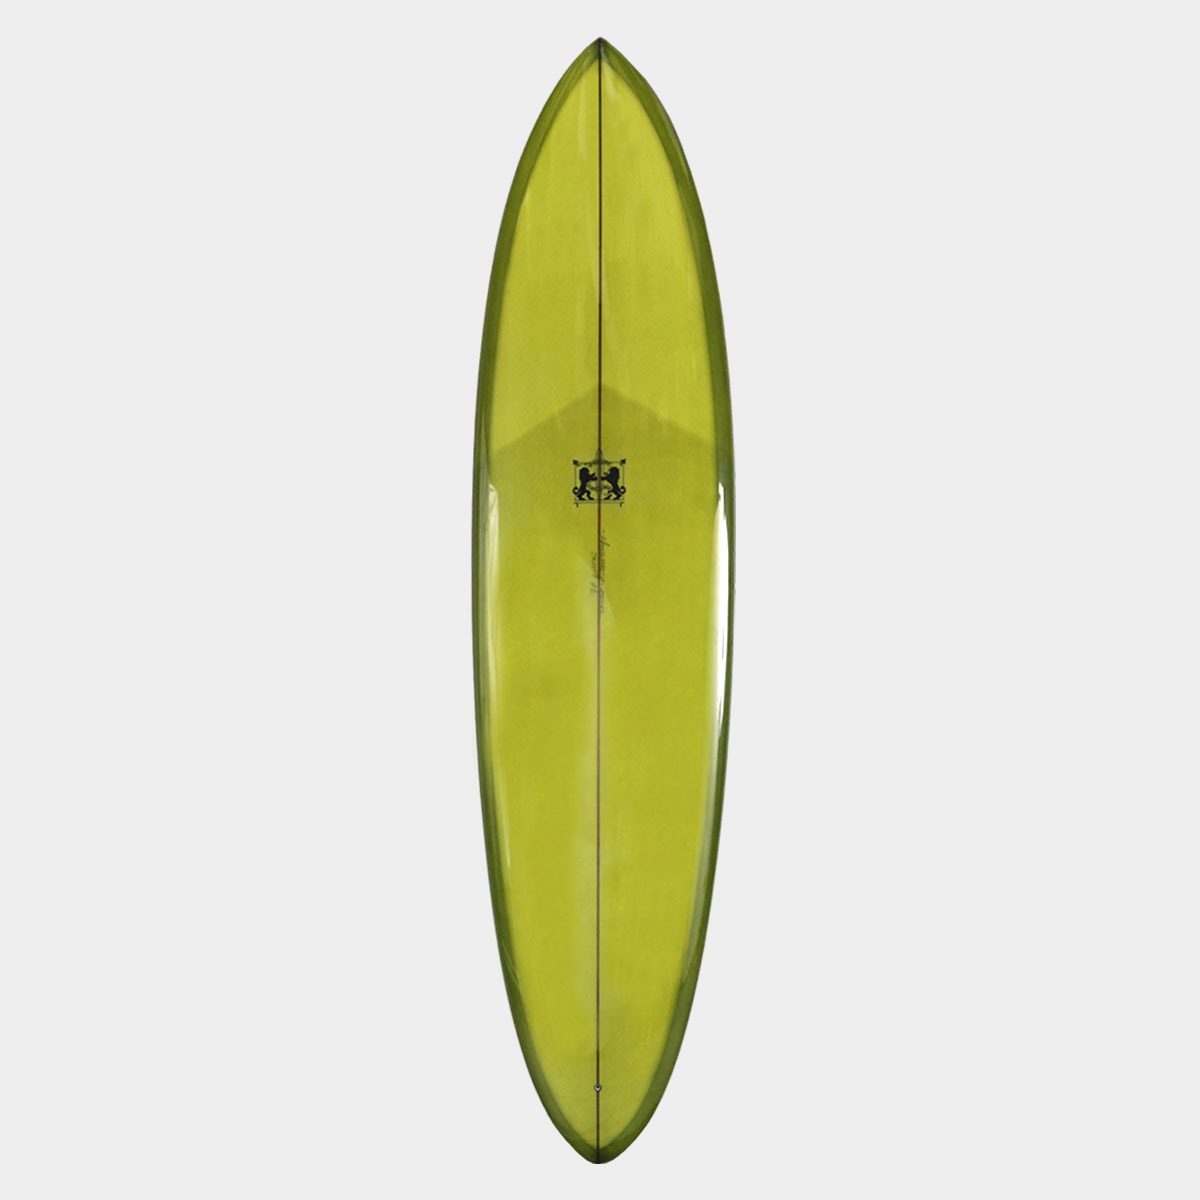 ラリーメイビル サーフボード マジック 7'6 サーフィン シングル ボックス surfboards LARRY MABILE MAGIC 7.6  SINGLE BOX【jk2307】-ジャックオーシャンスポーツ